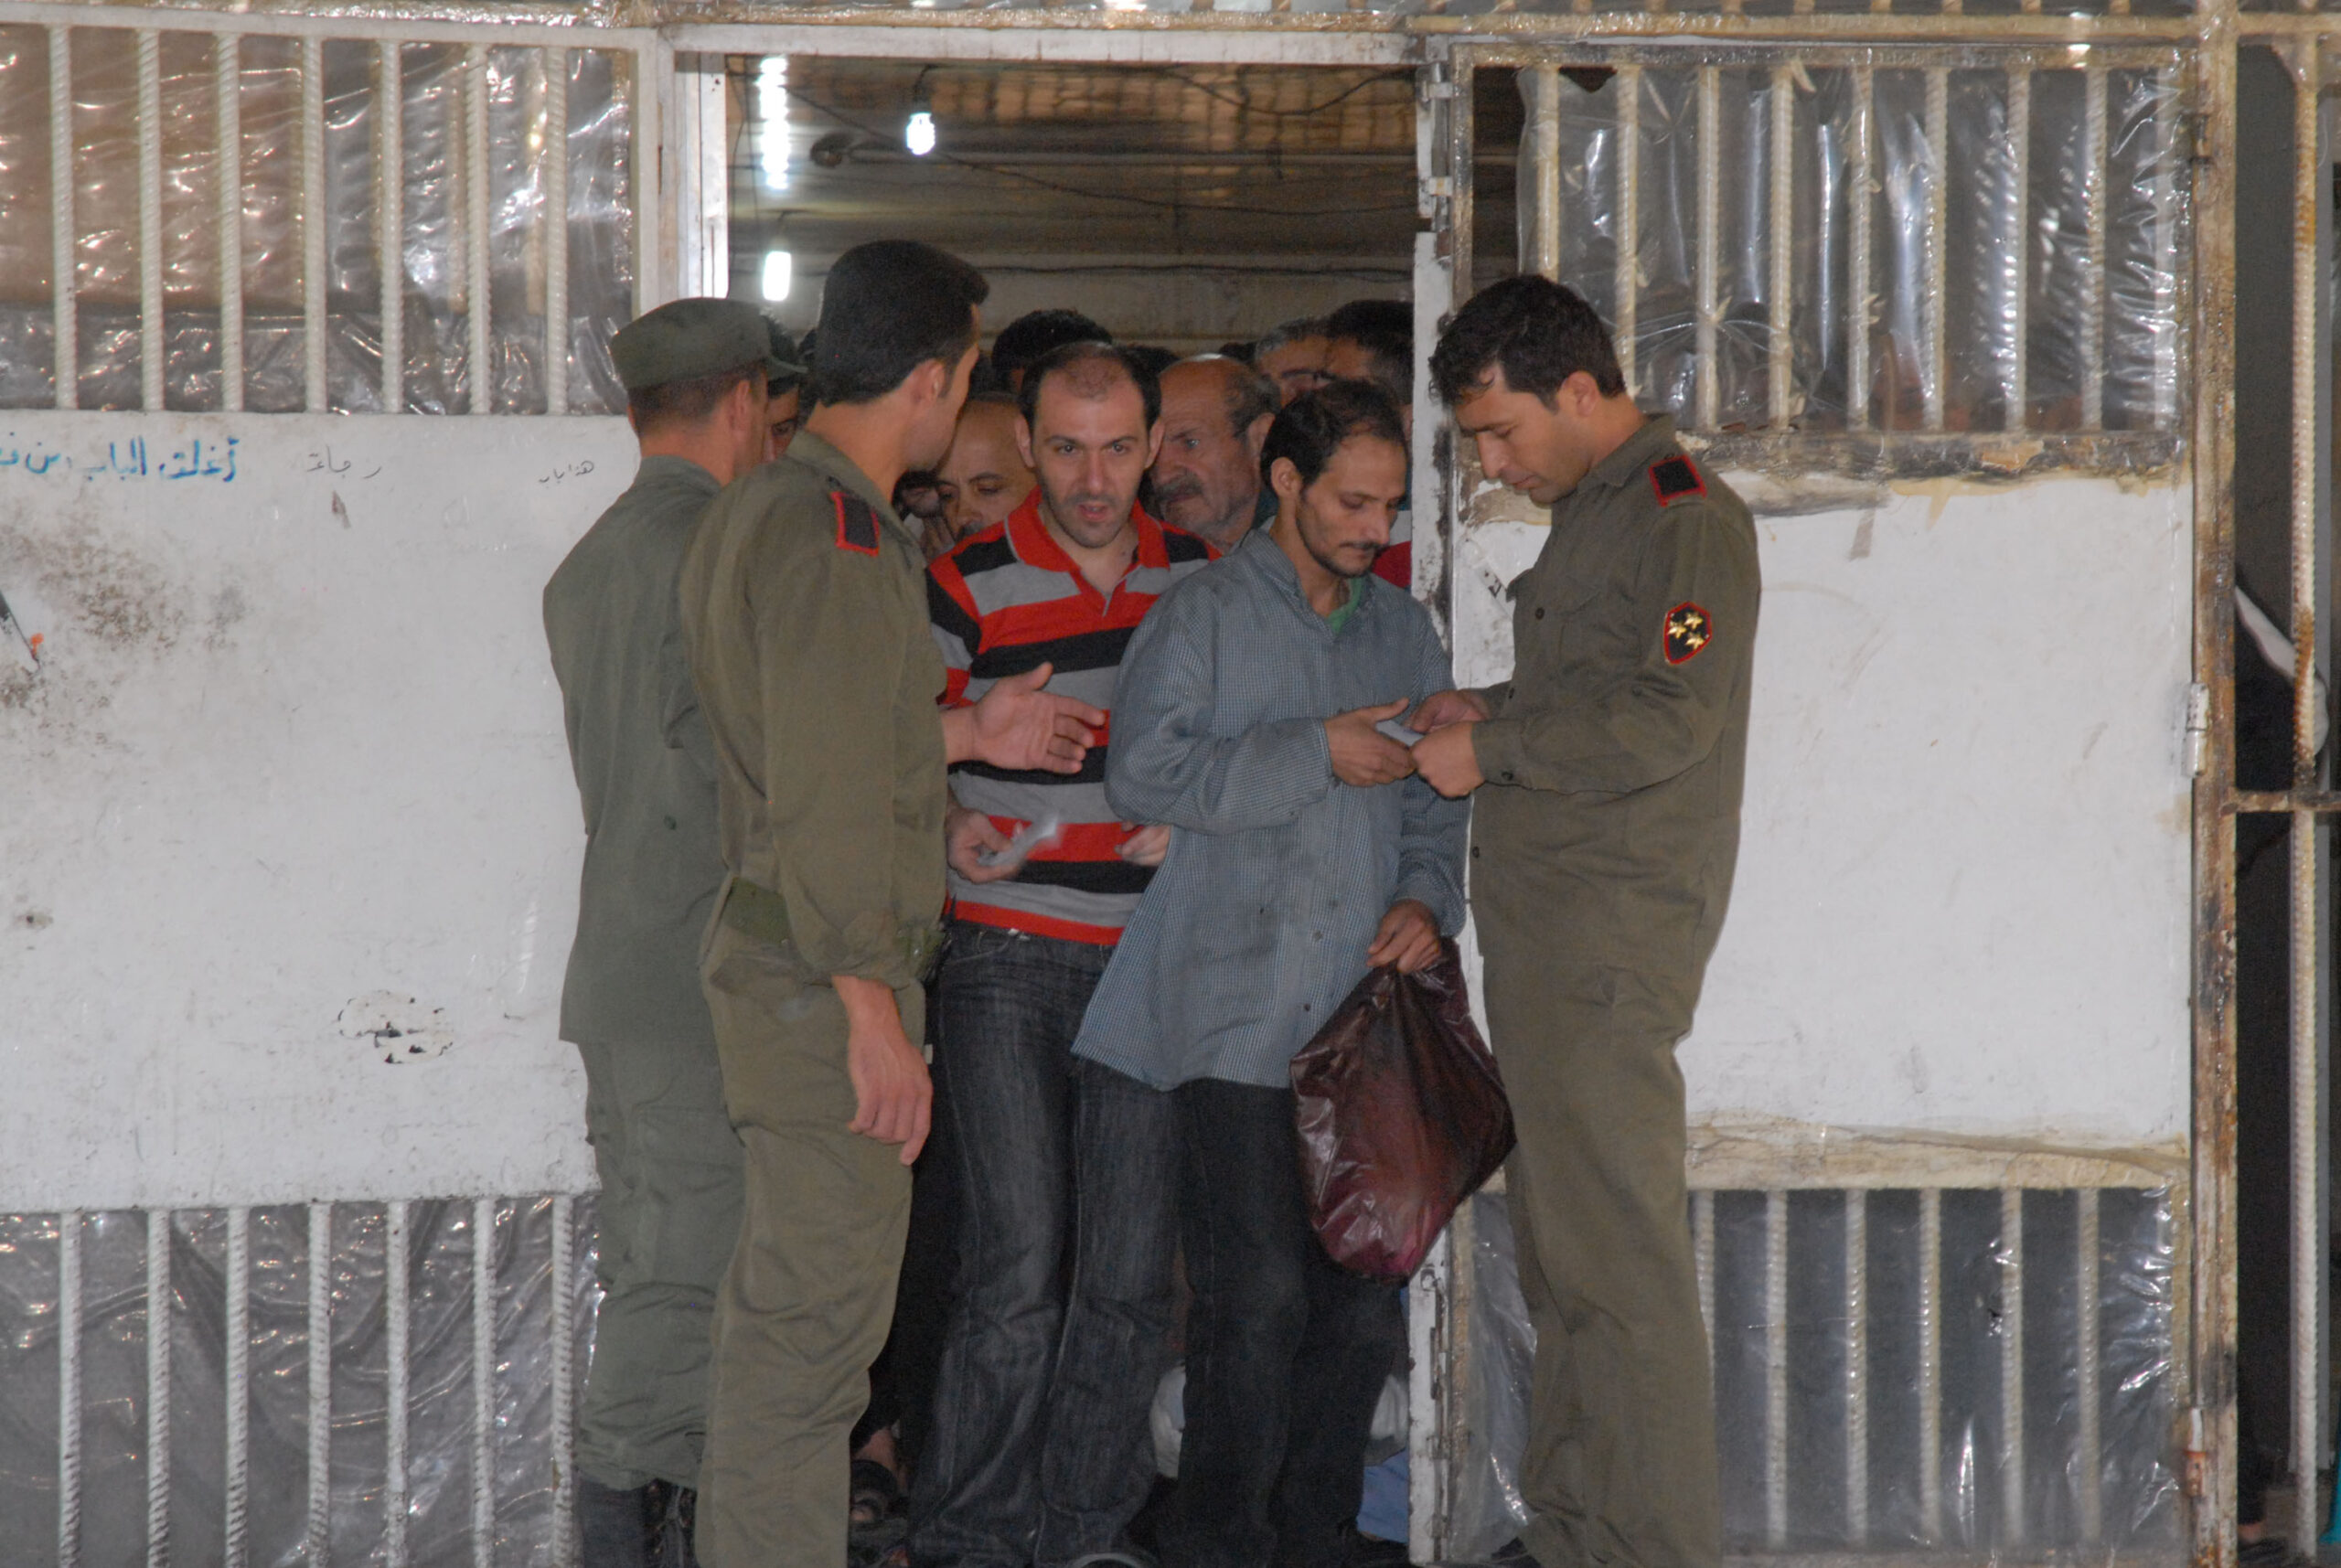 سجناء بسجن "دمشق المركزي" أفرج عنهم بموجب مرسوم "العفو الرئاسي - 2014 (أسوشيتد برس)